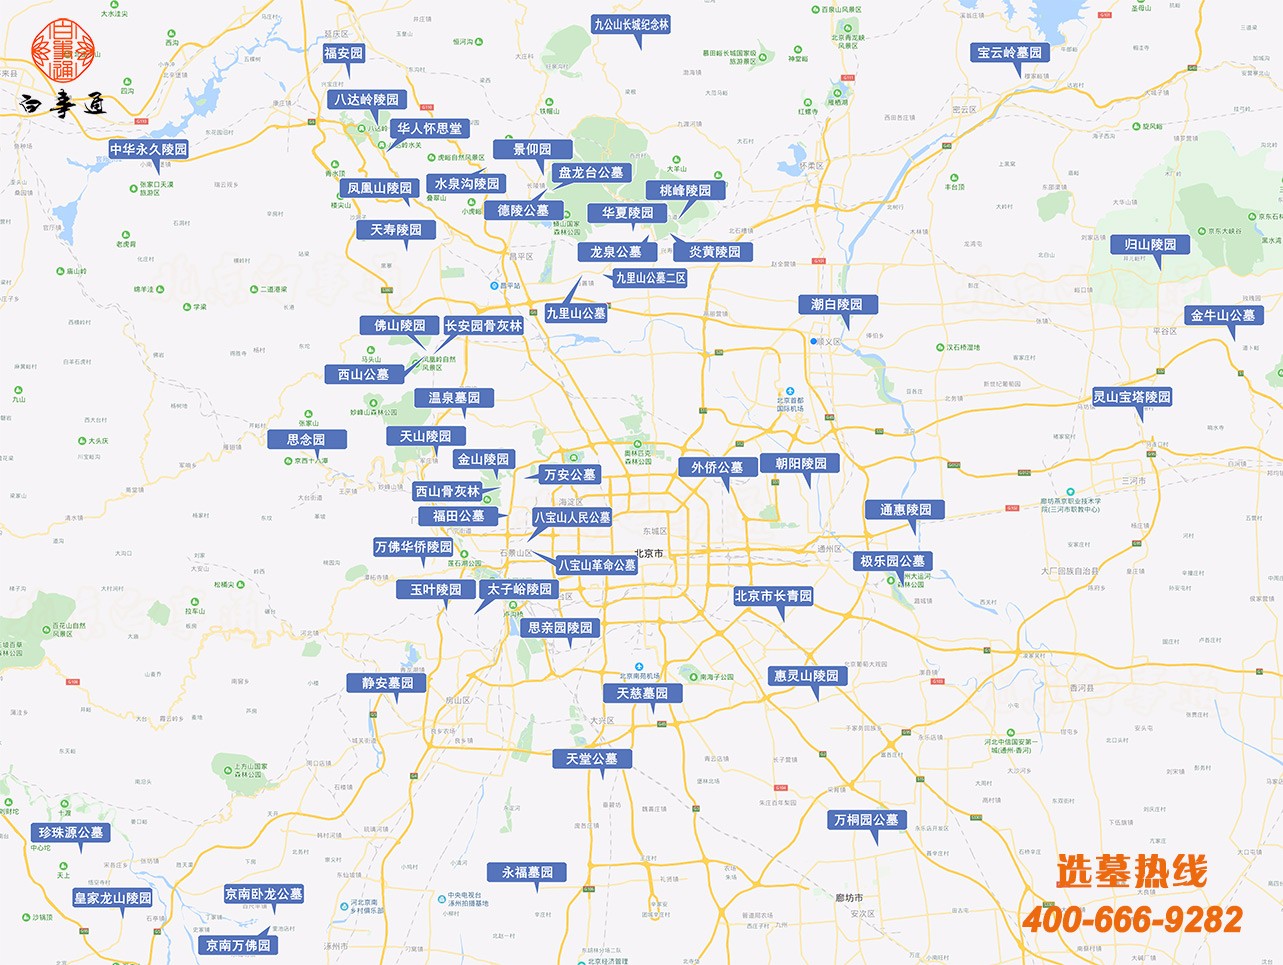 北京市及周边墓地陵园分布图